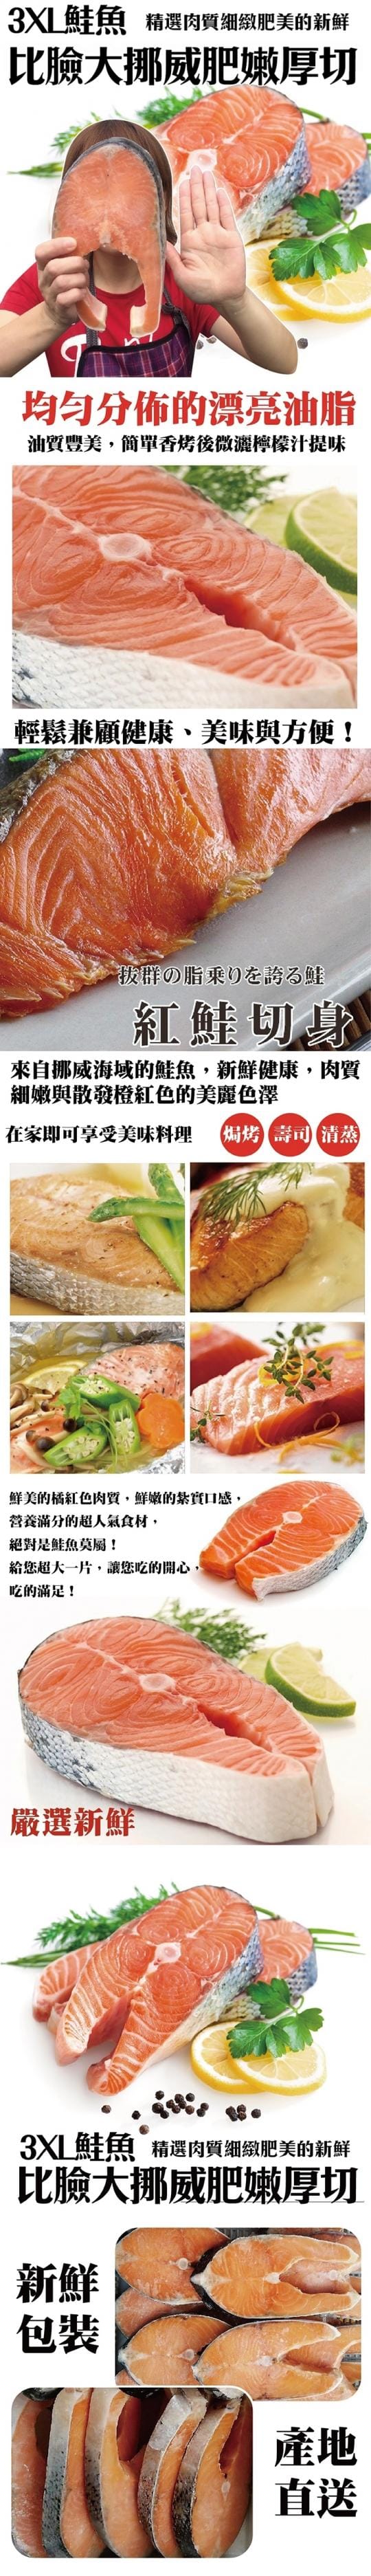 【三頓飯】3XL特大厚切挪威鮭魚